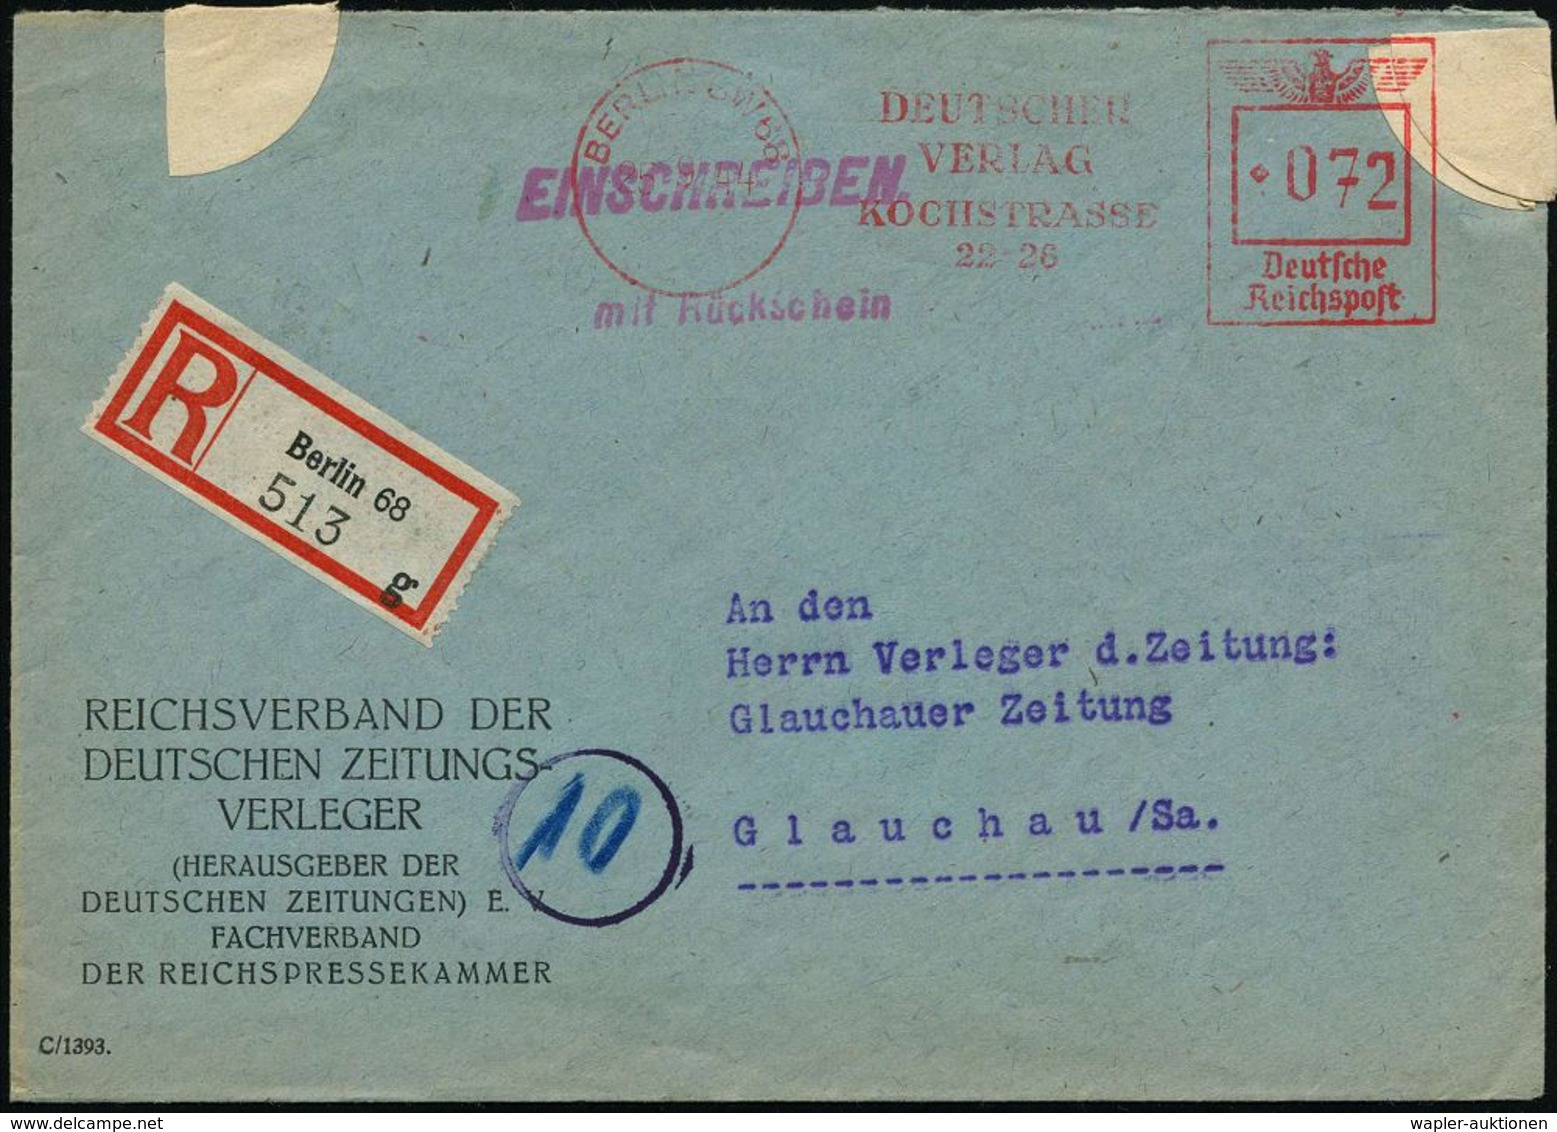 BERLIN SW 68/ DEUTSCHER/ VERLAG/ KOCHSTRASSE/ 22-26 1944 (25.9.) AFS 072 Pf. = "arisierter" Ullstein-Verlag Via Cautio-G - Judaísmo